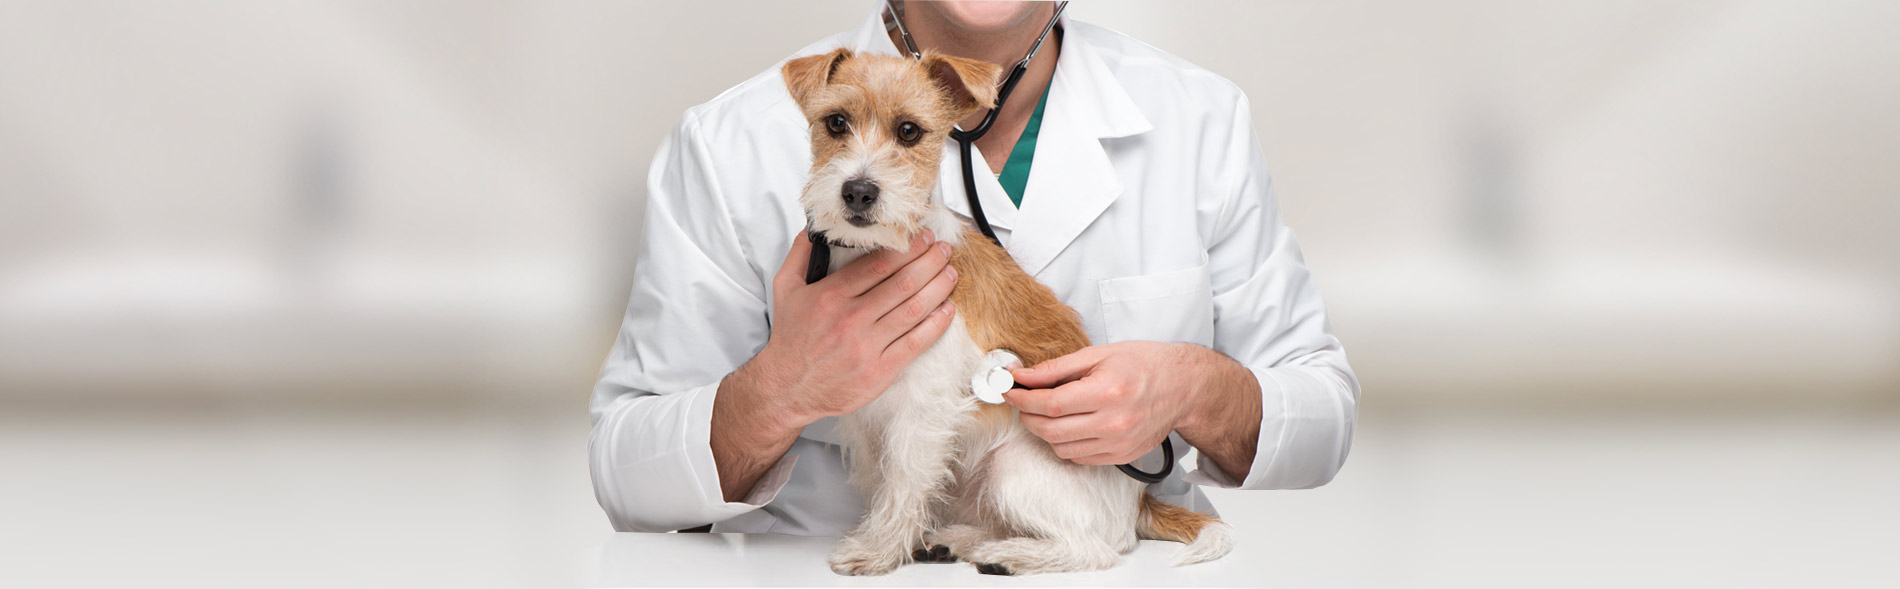 pet clinic services